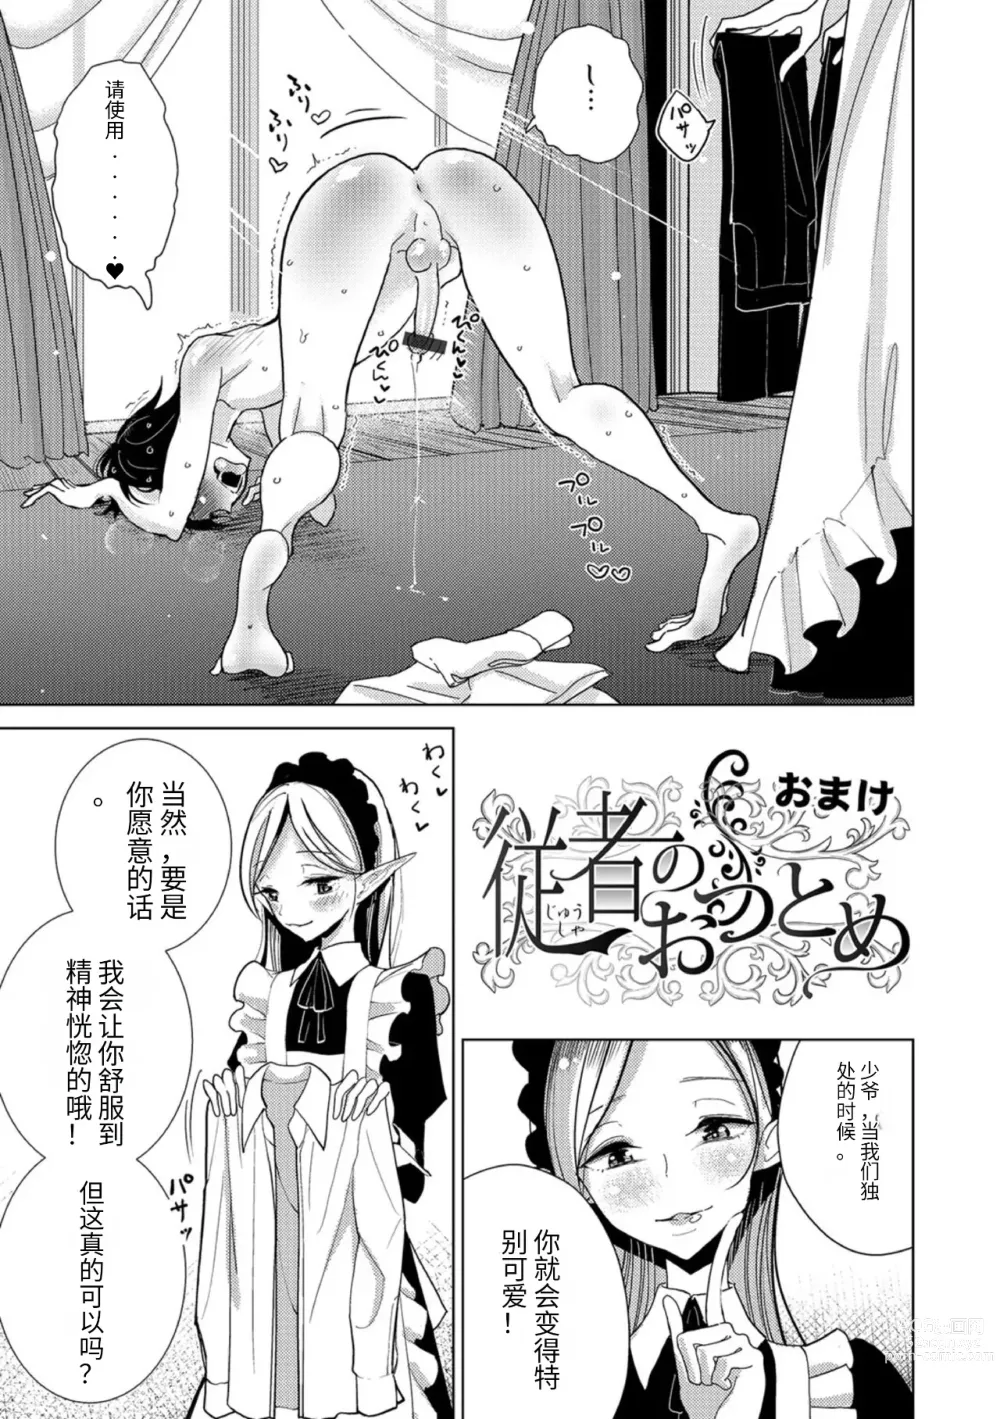 Page 199 of manga Bokura wa...